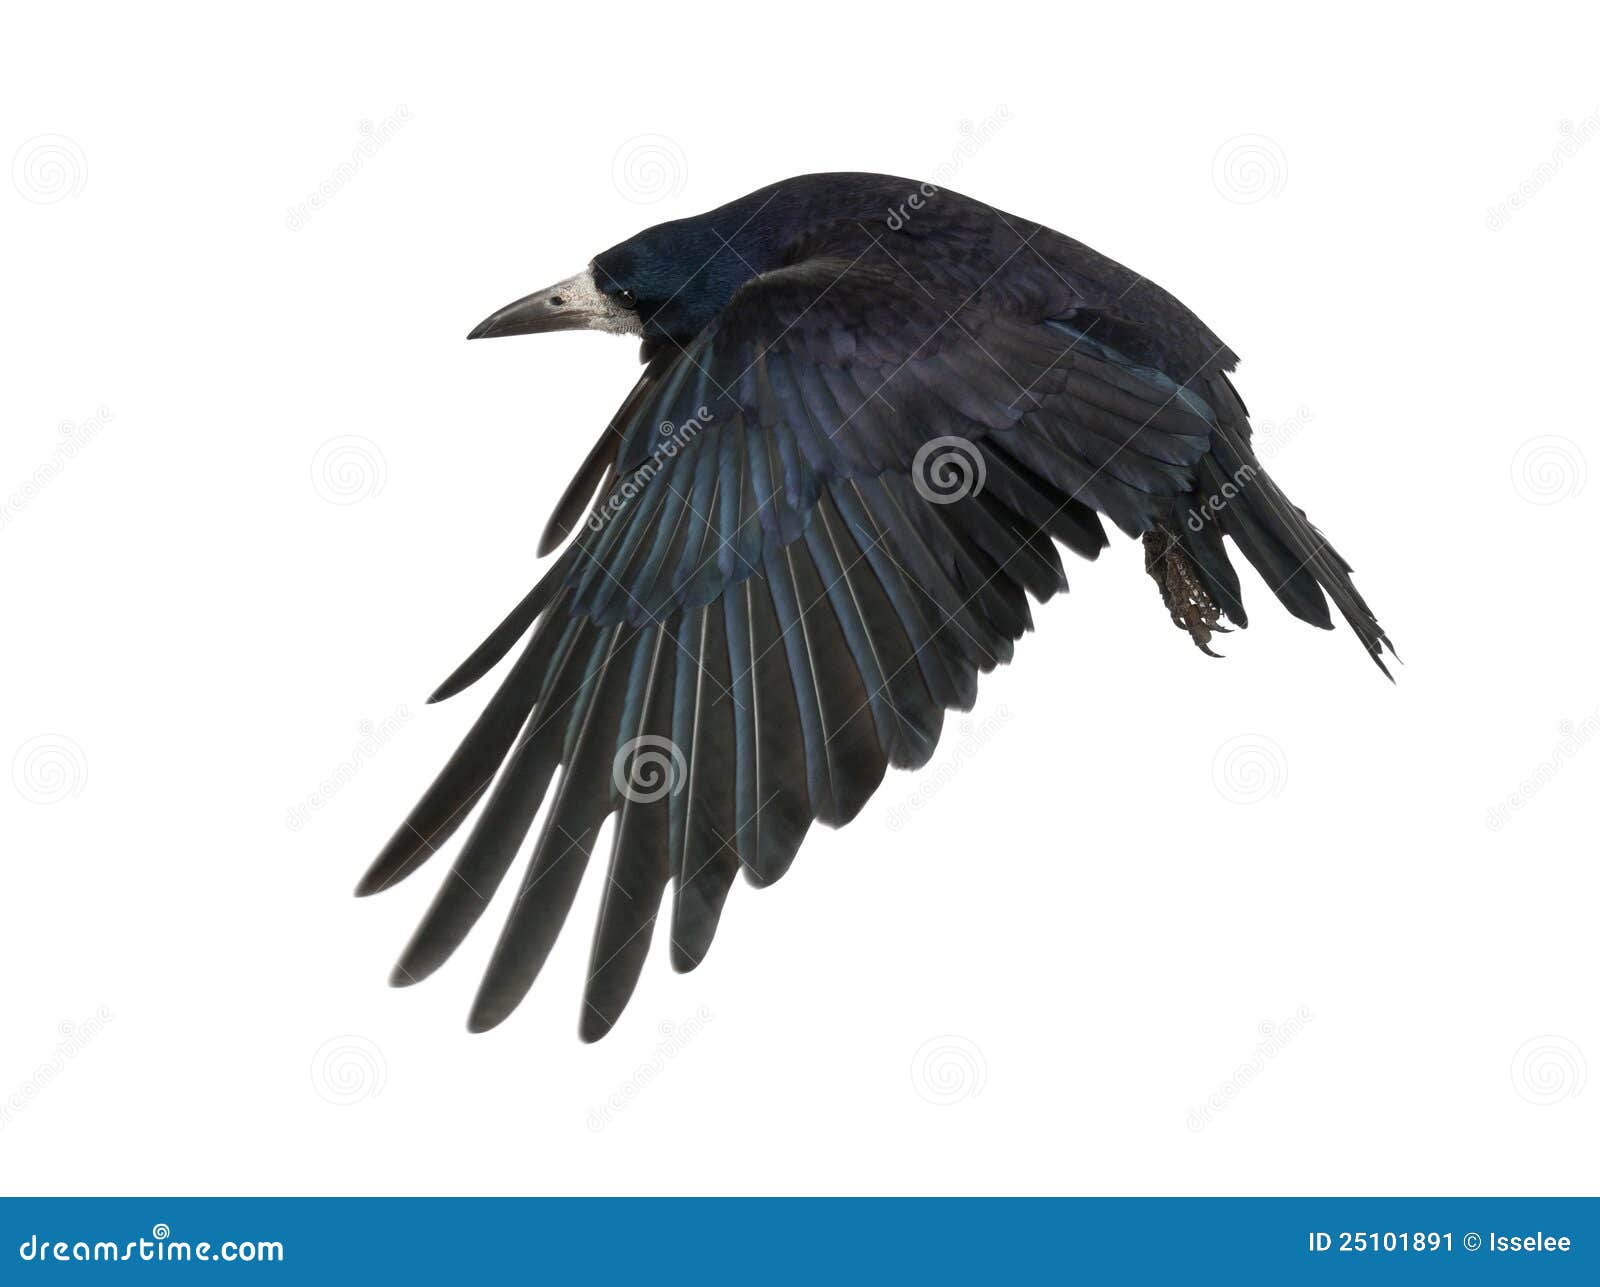 rook, corvus frugilegus, 3 years old, flying